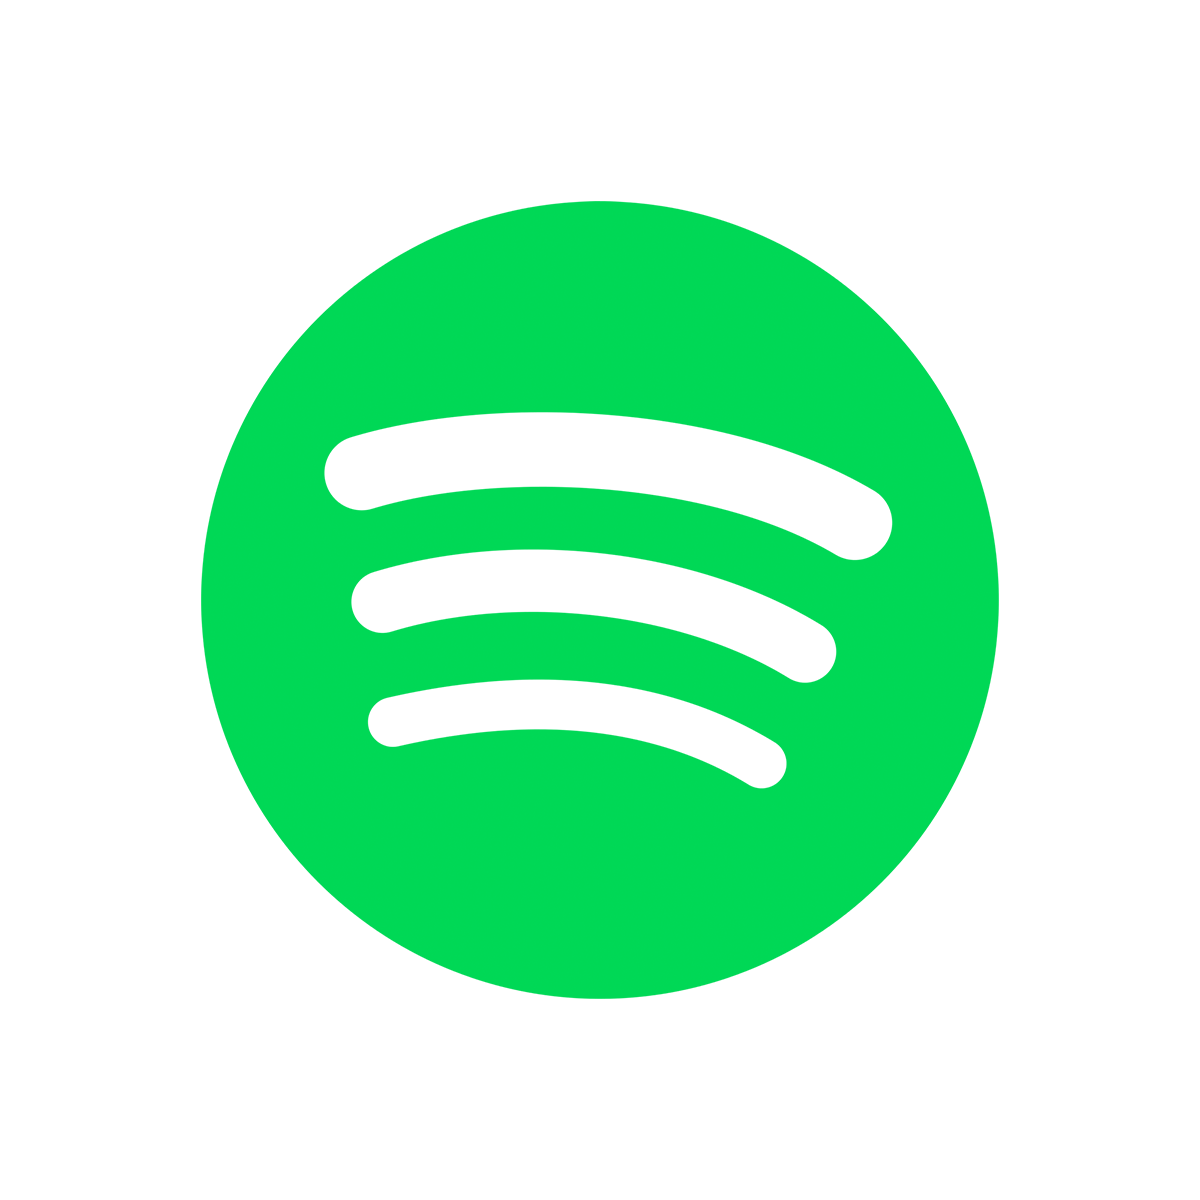 Obtenez plus découtes sur Spotify avec followersnet